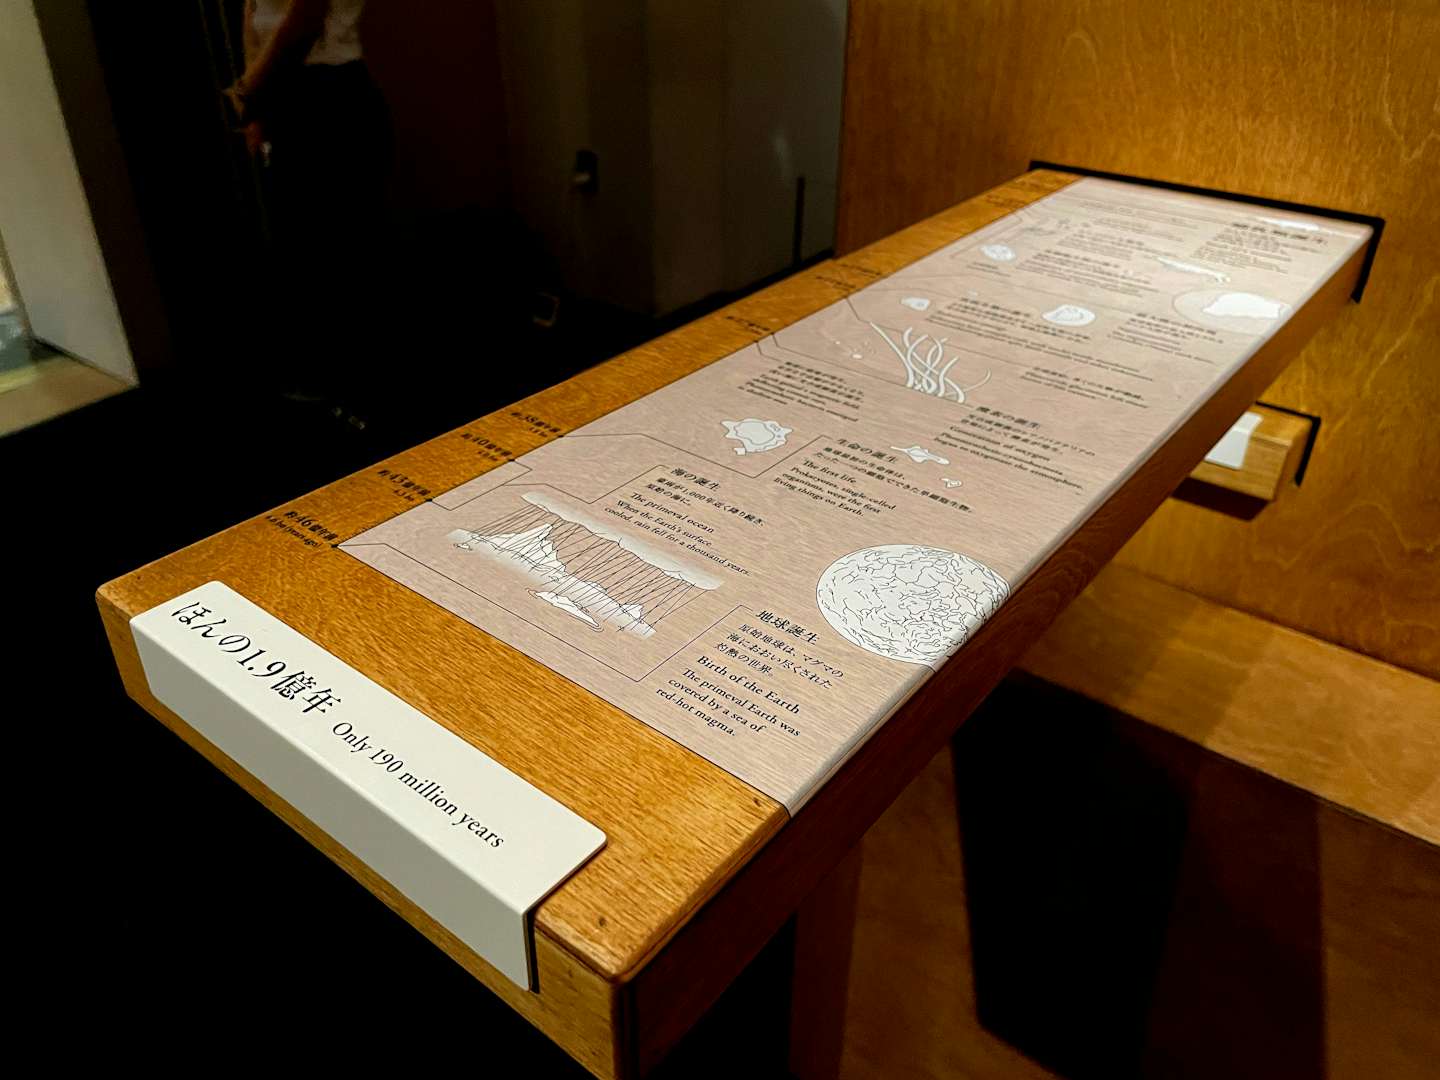 声なき剥製がつたえる生物学 Who Are We 観察と発見の生物学 が上野の国立科学博物館で開催中 美術手帖